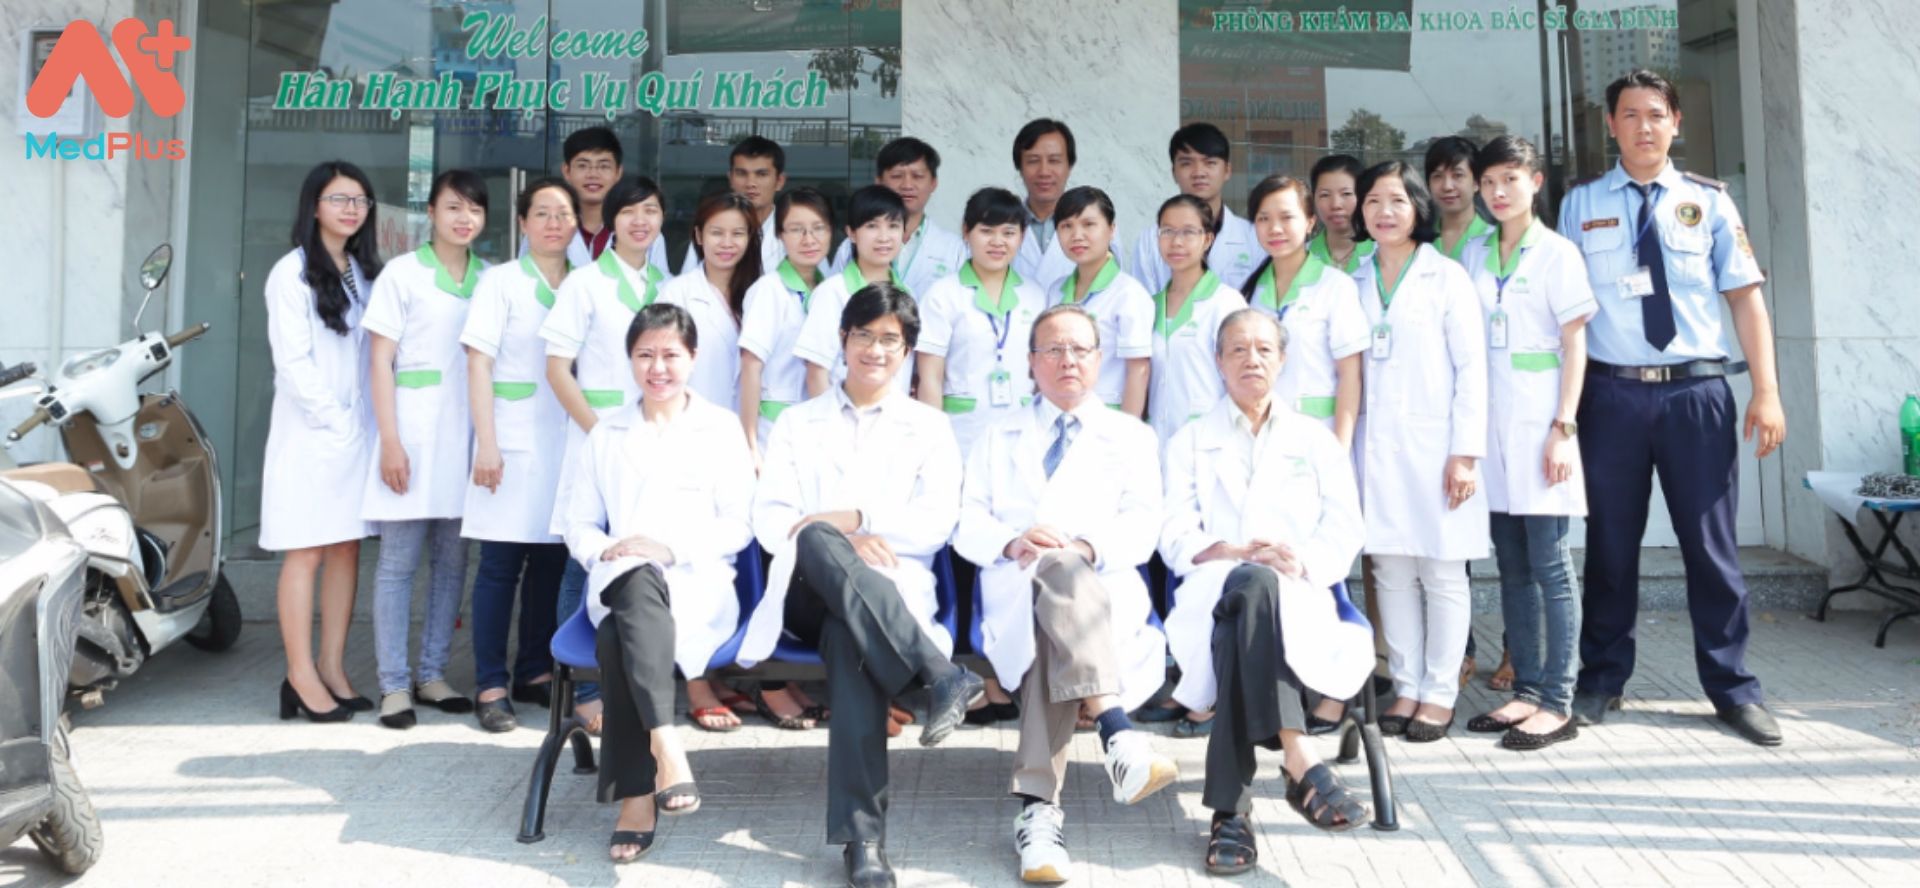 Đội ngũ y bác sĩ và nhân viên tại Phòng khám quốc tế Hàng Xanh